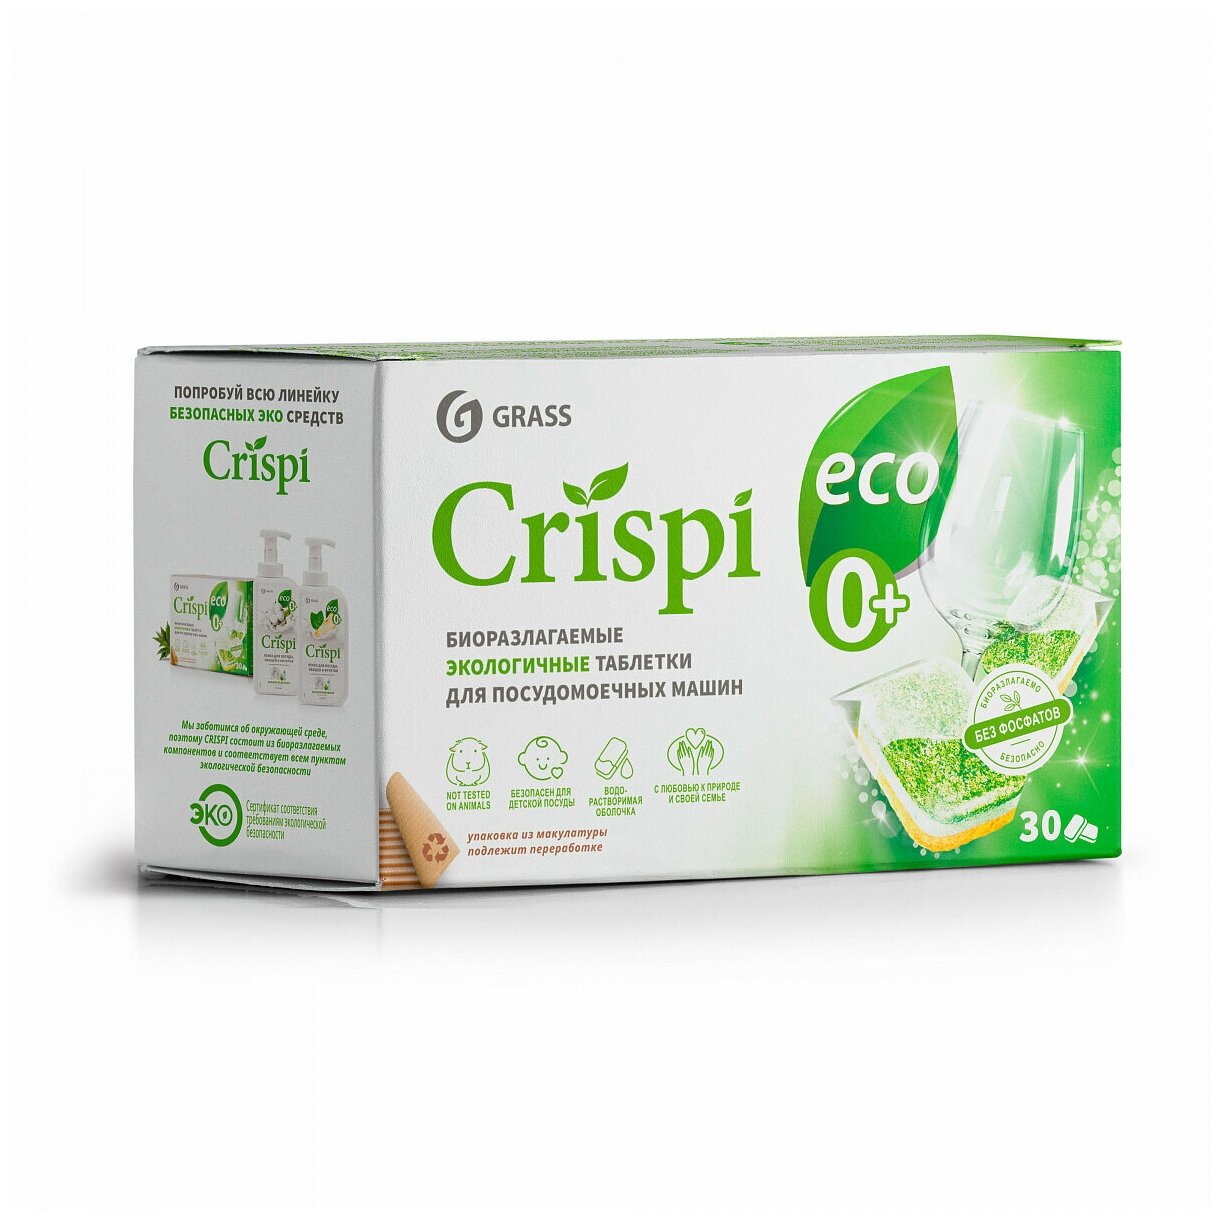 Экологичные таблетки для посудомоечных машин "CRISPI", капсулы для ПММ, Криспи для посудомойки,30шт.